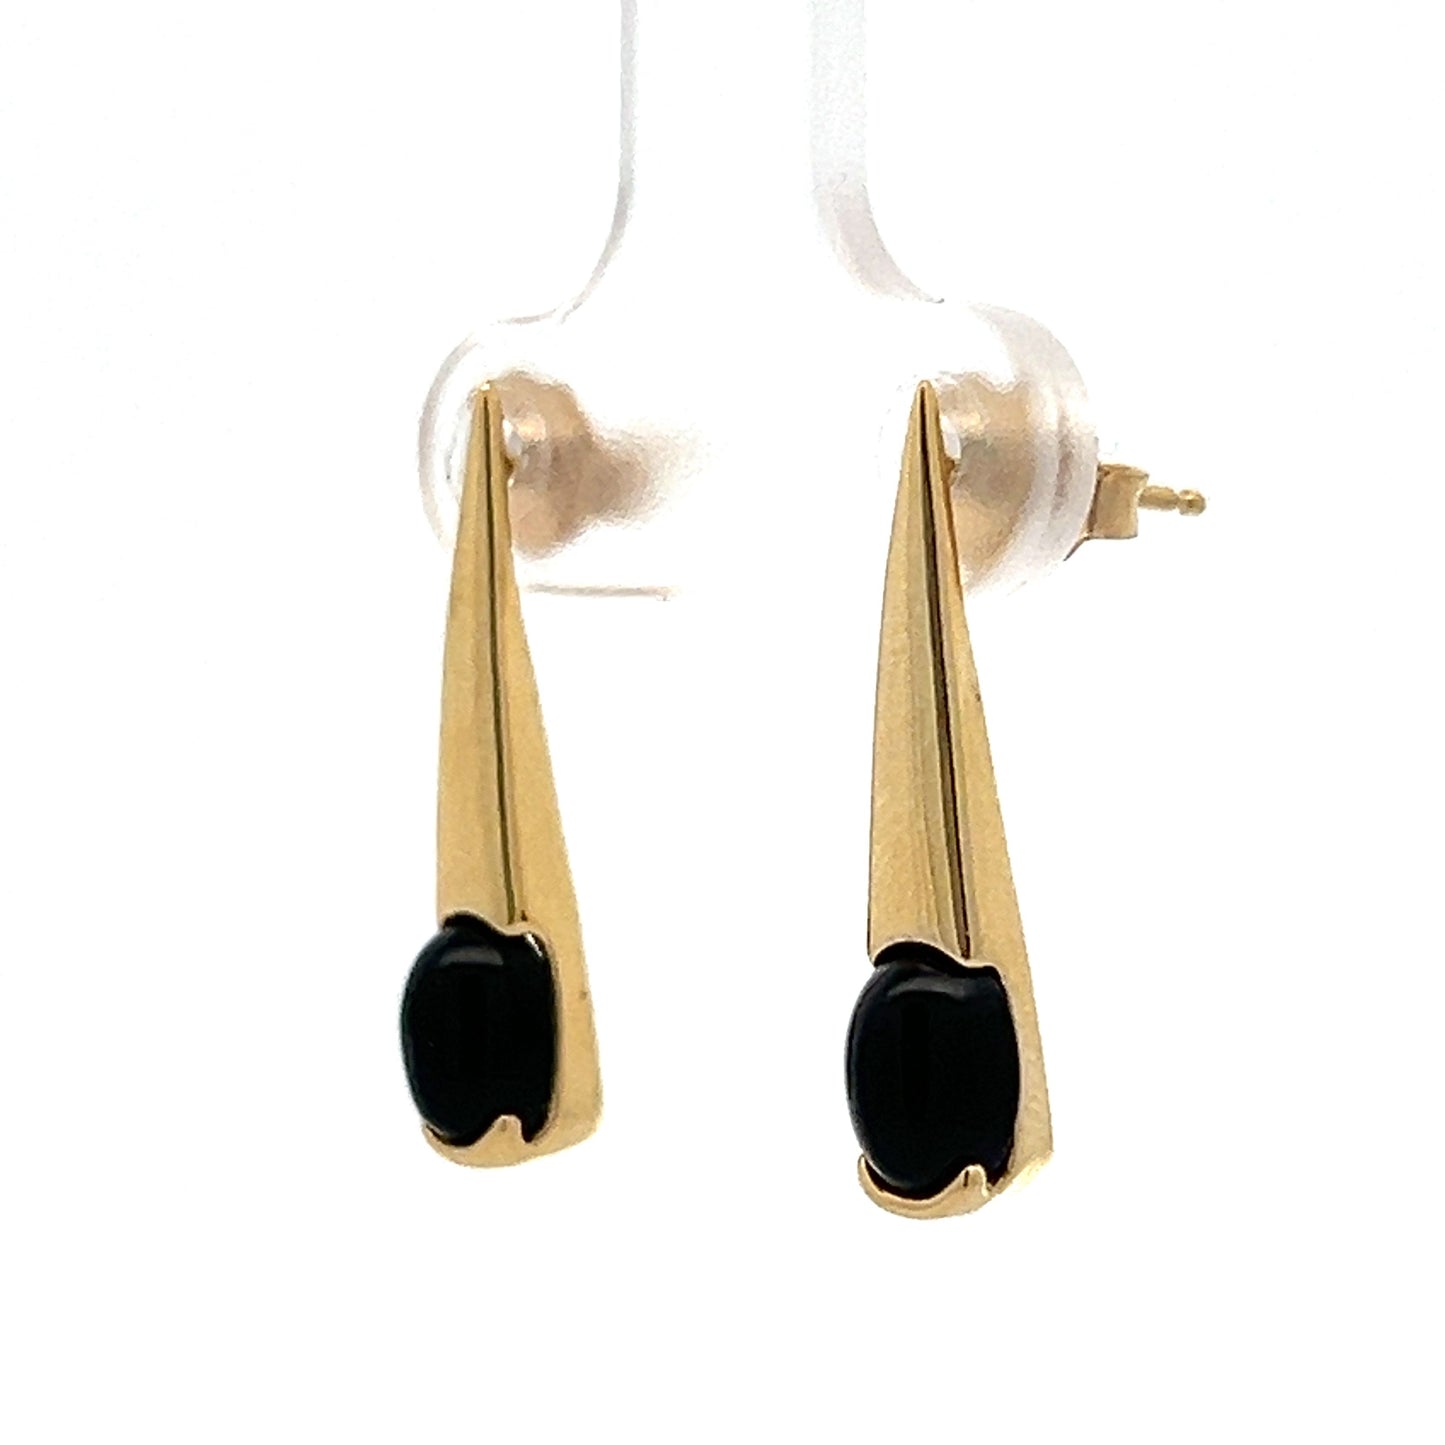 Black Onyx Spike Stud Earrings in 14k Yellow Gold